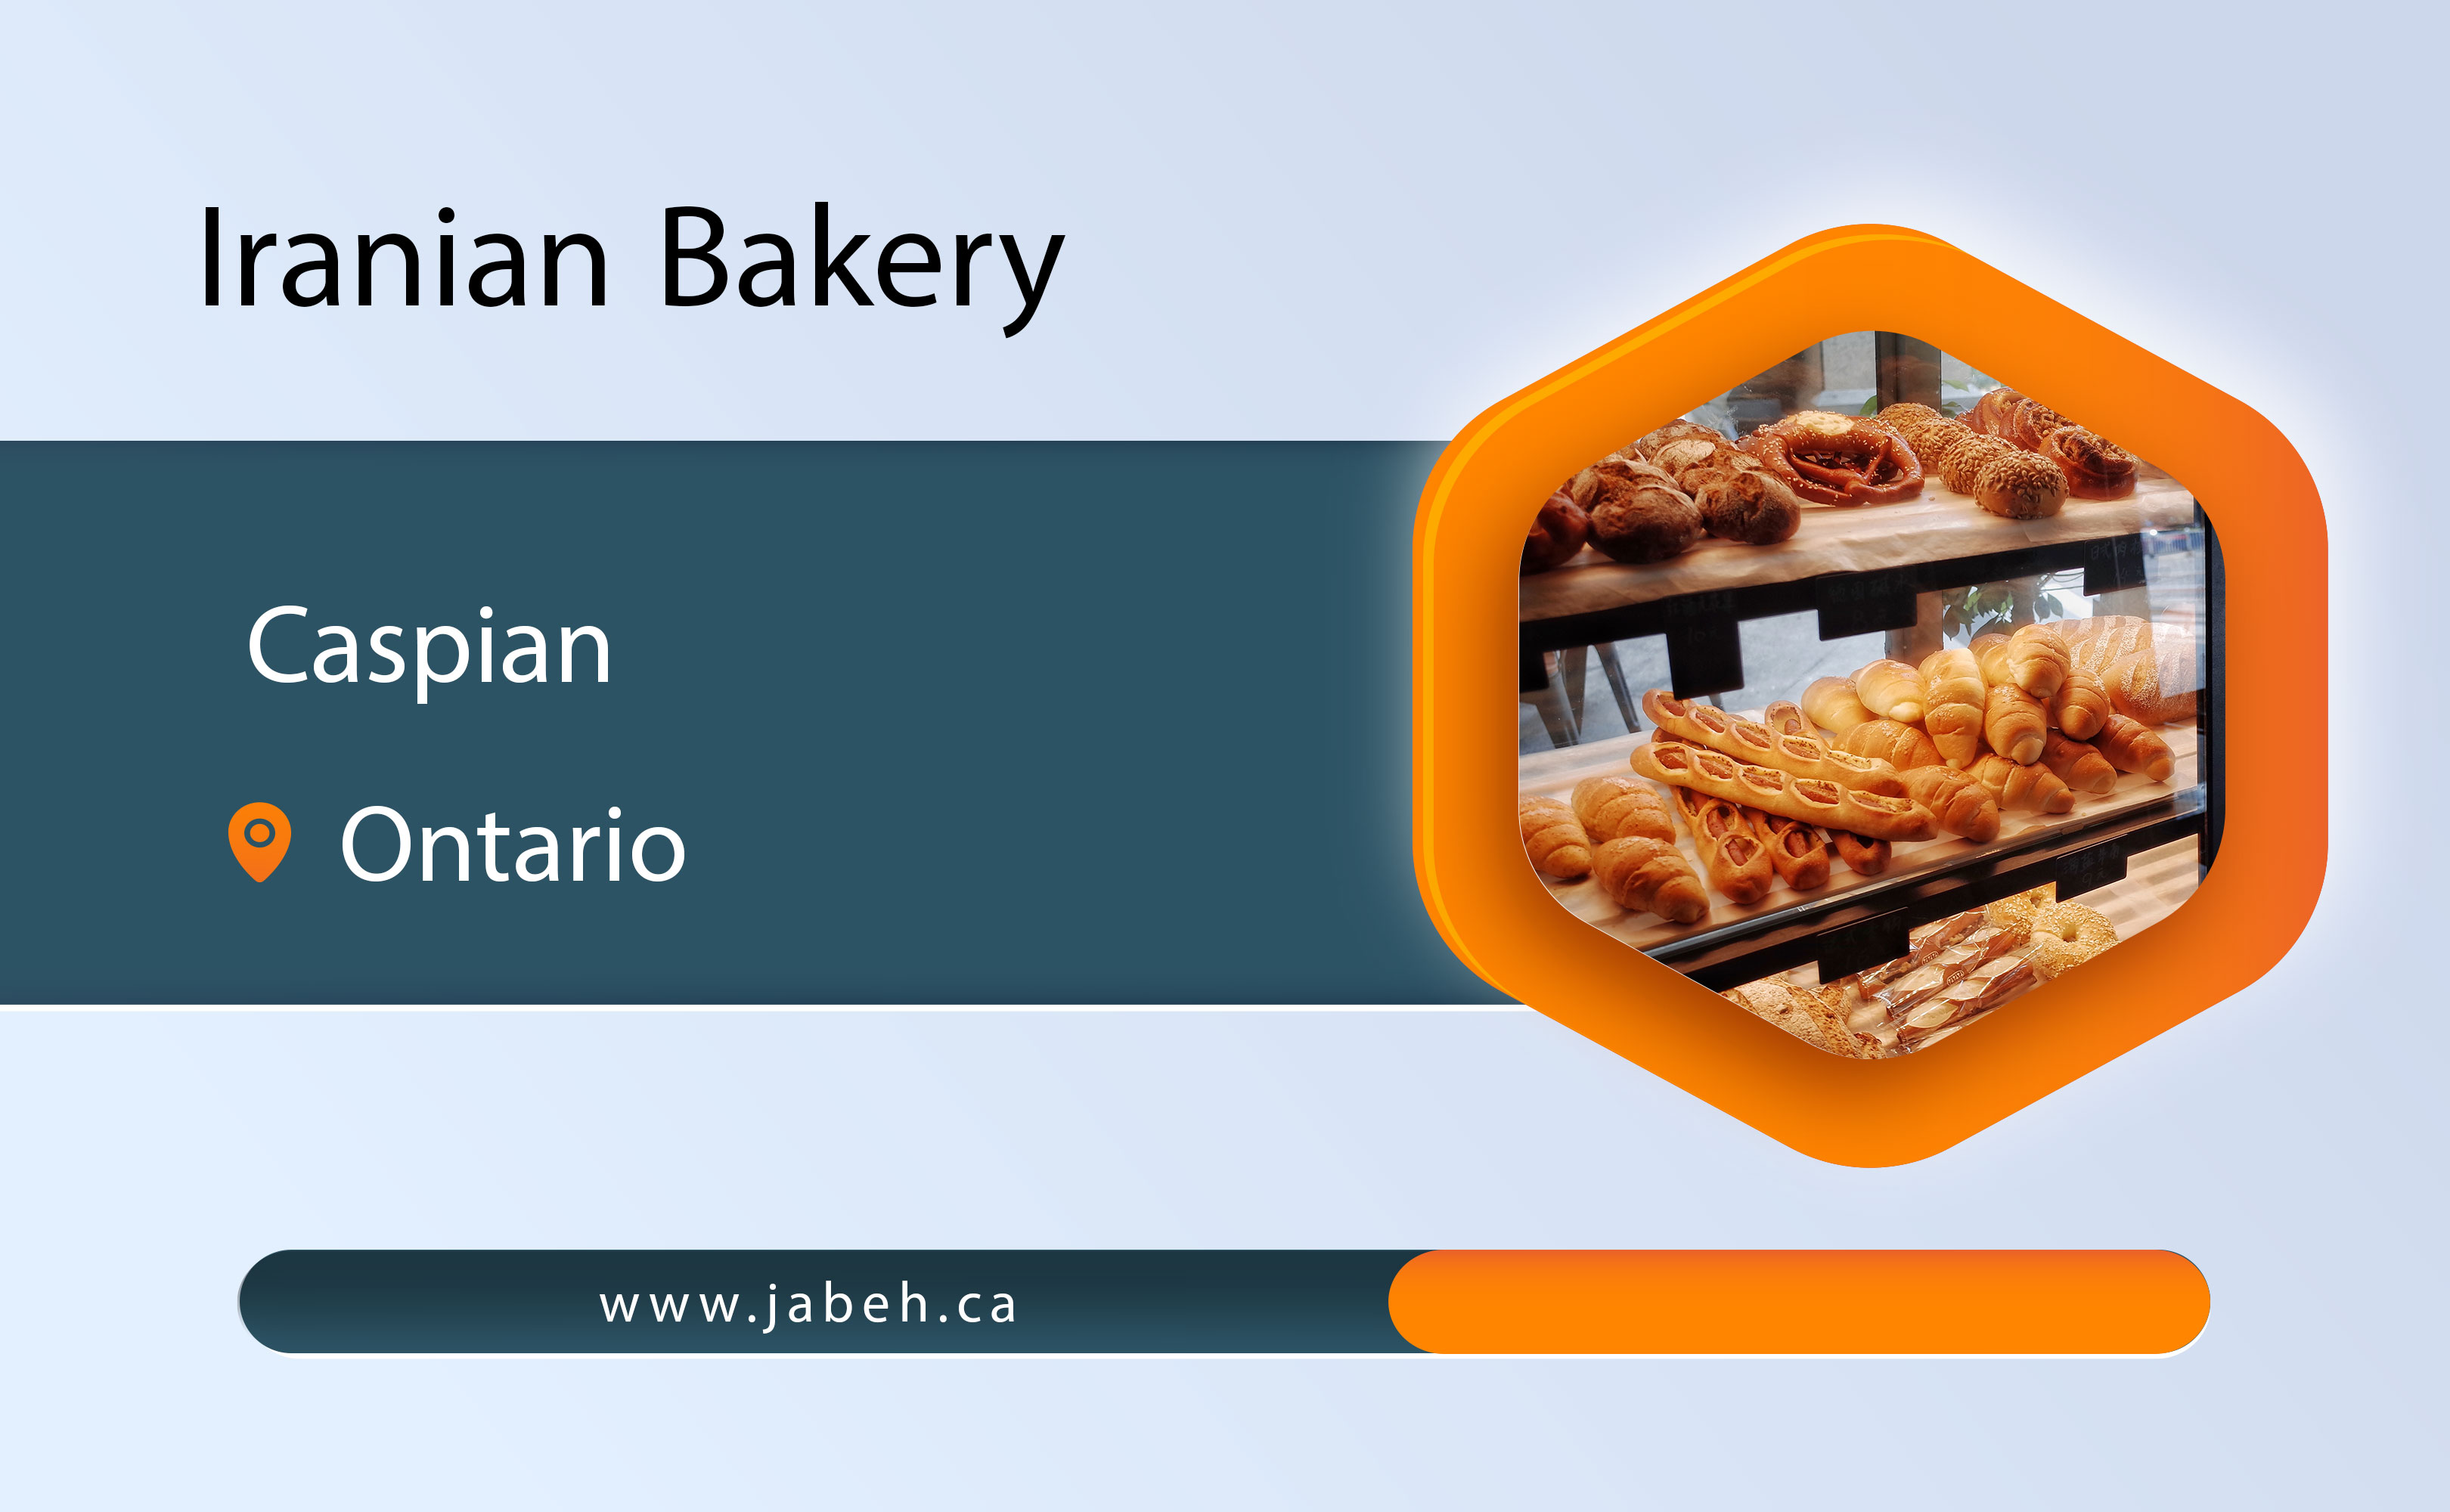 Caspian Persian Bakery in Ontario